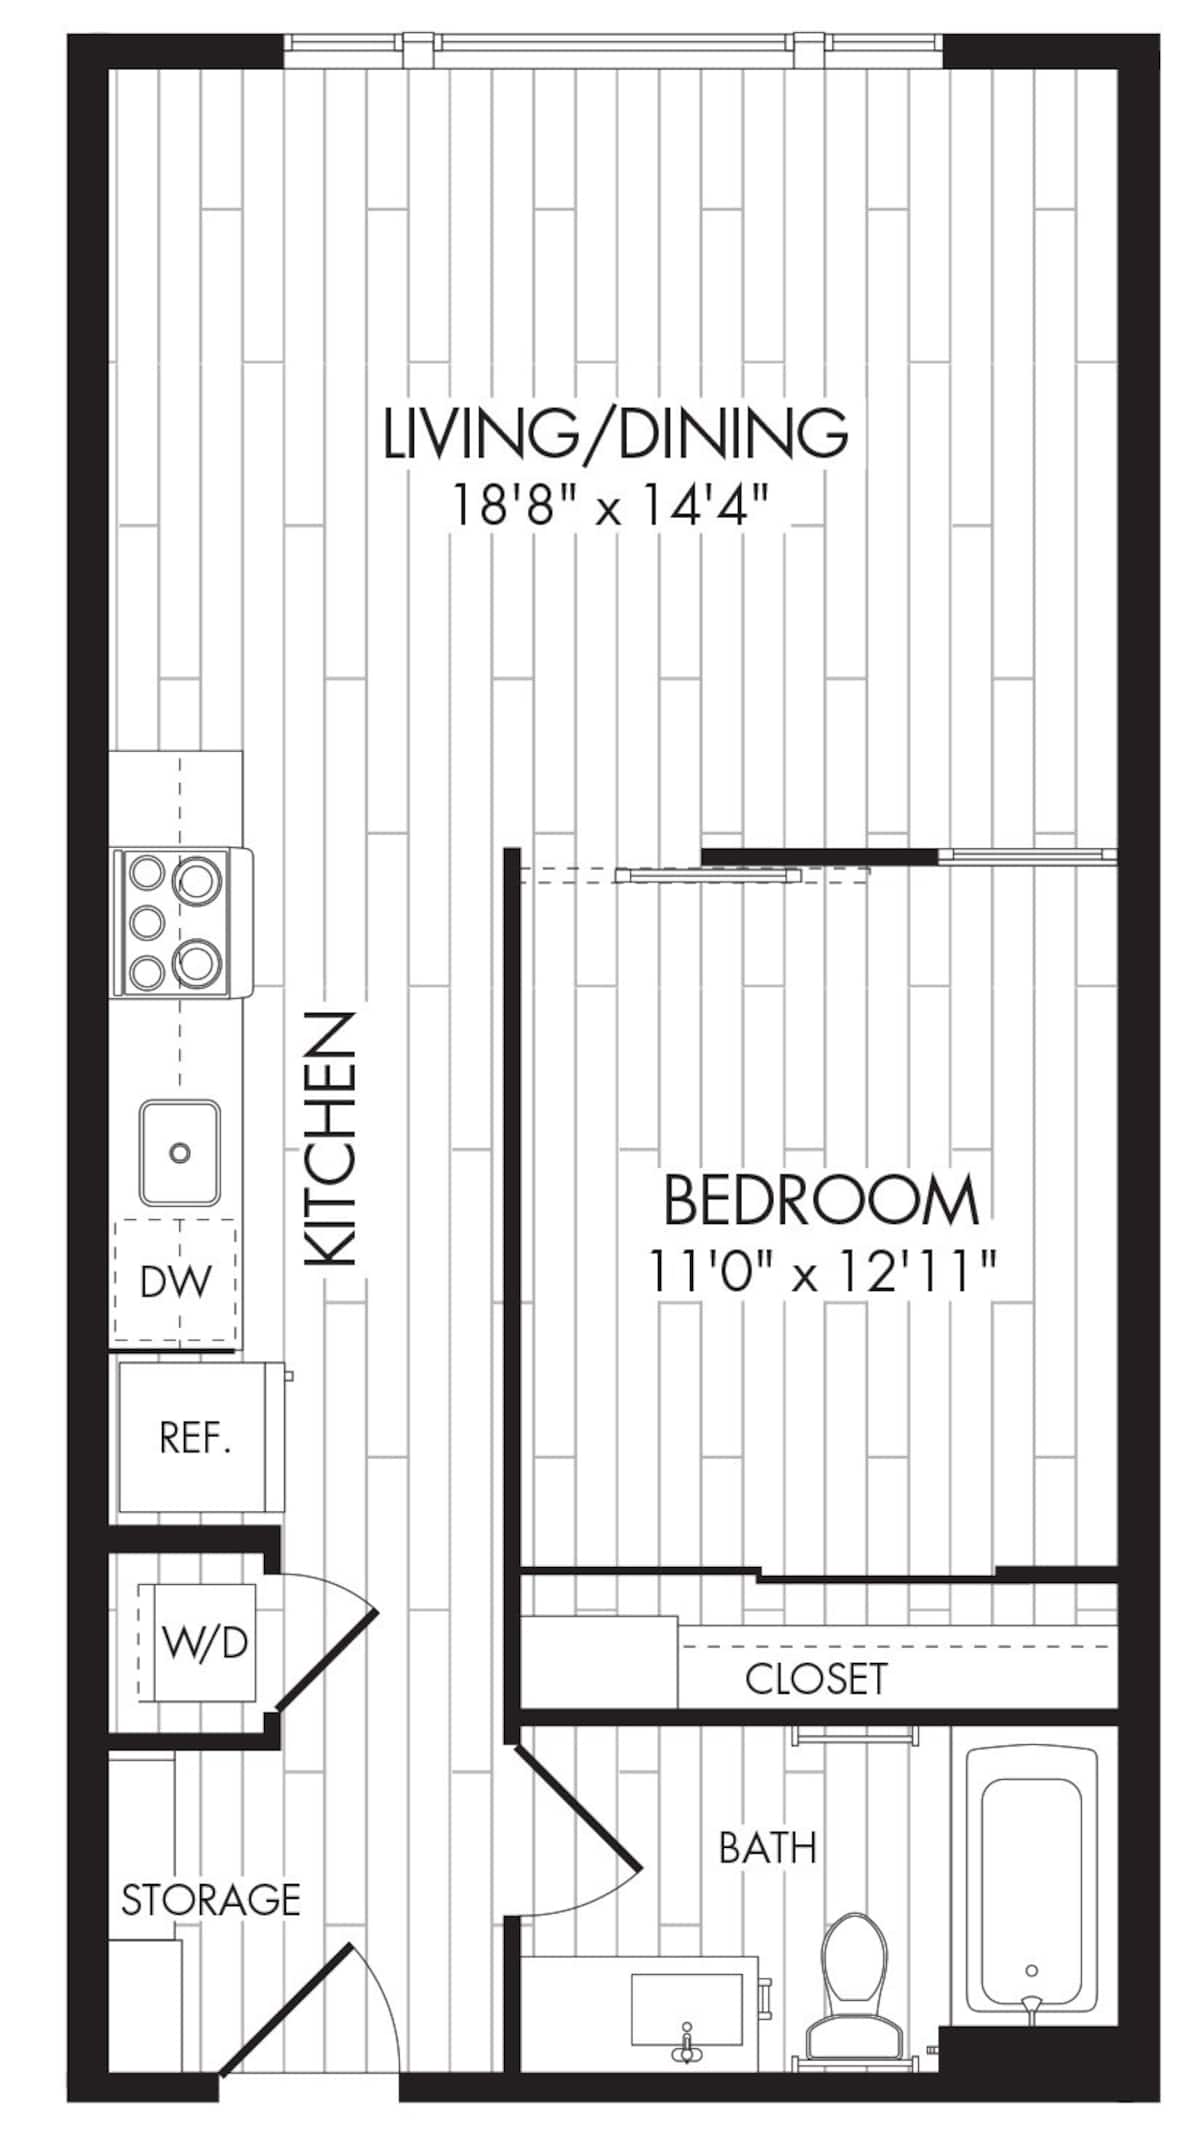 Floorplan diagram for 1C, showing 1 bedroom